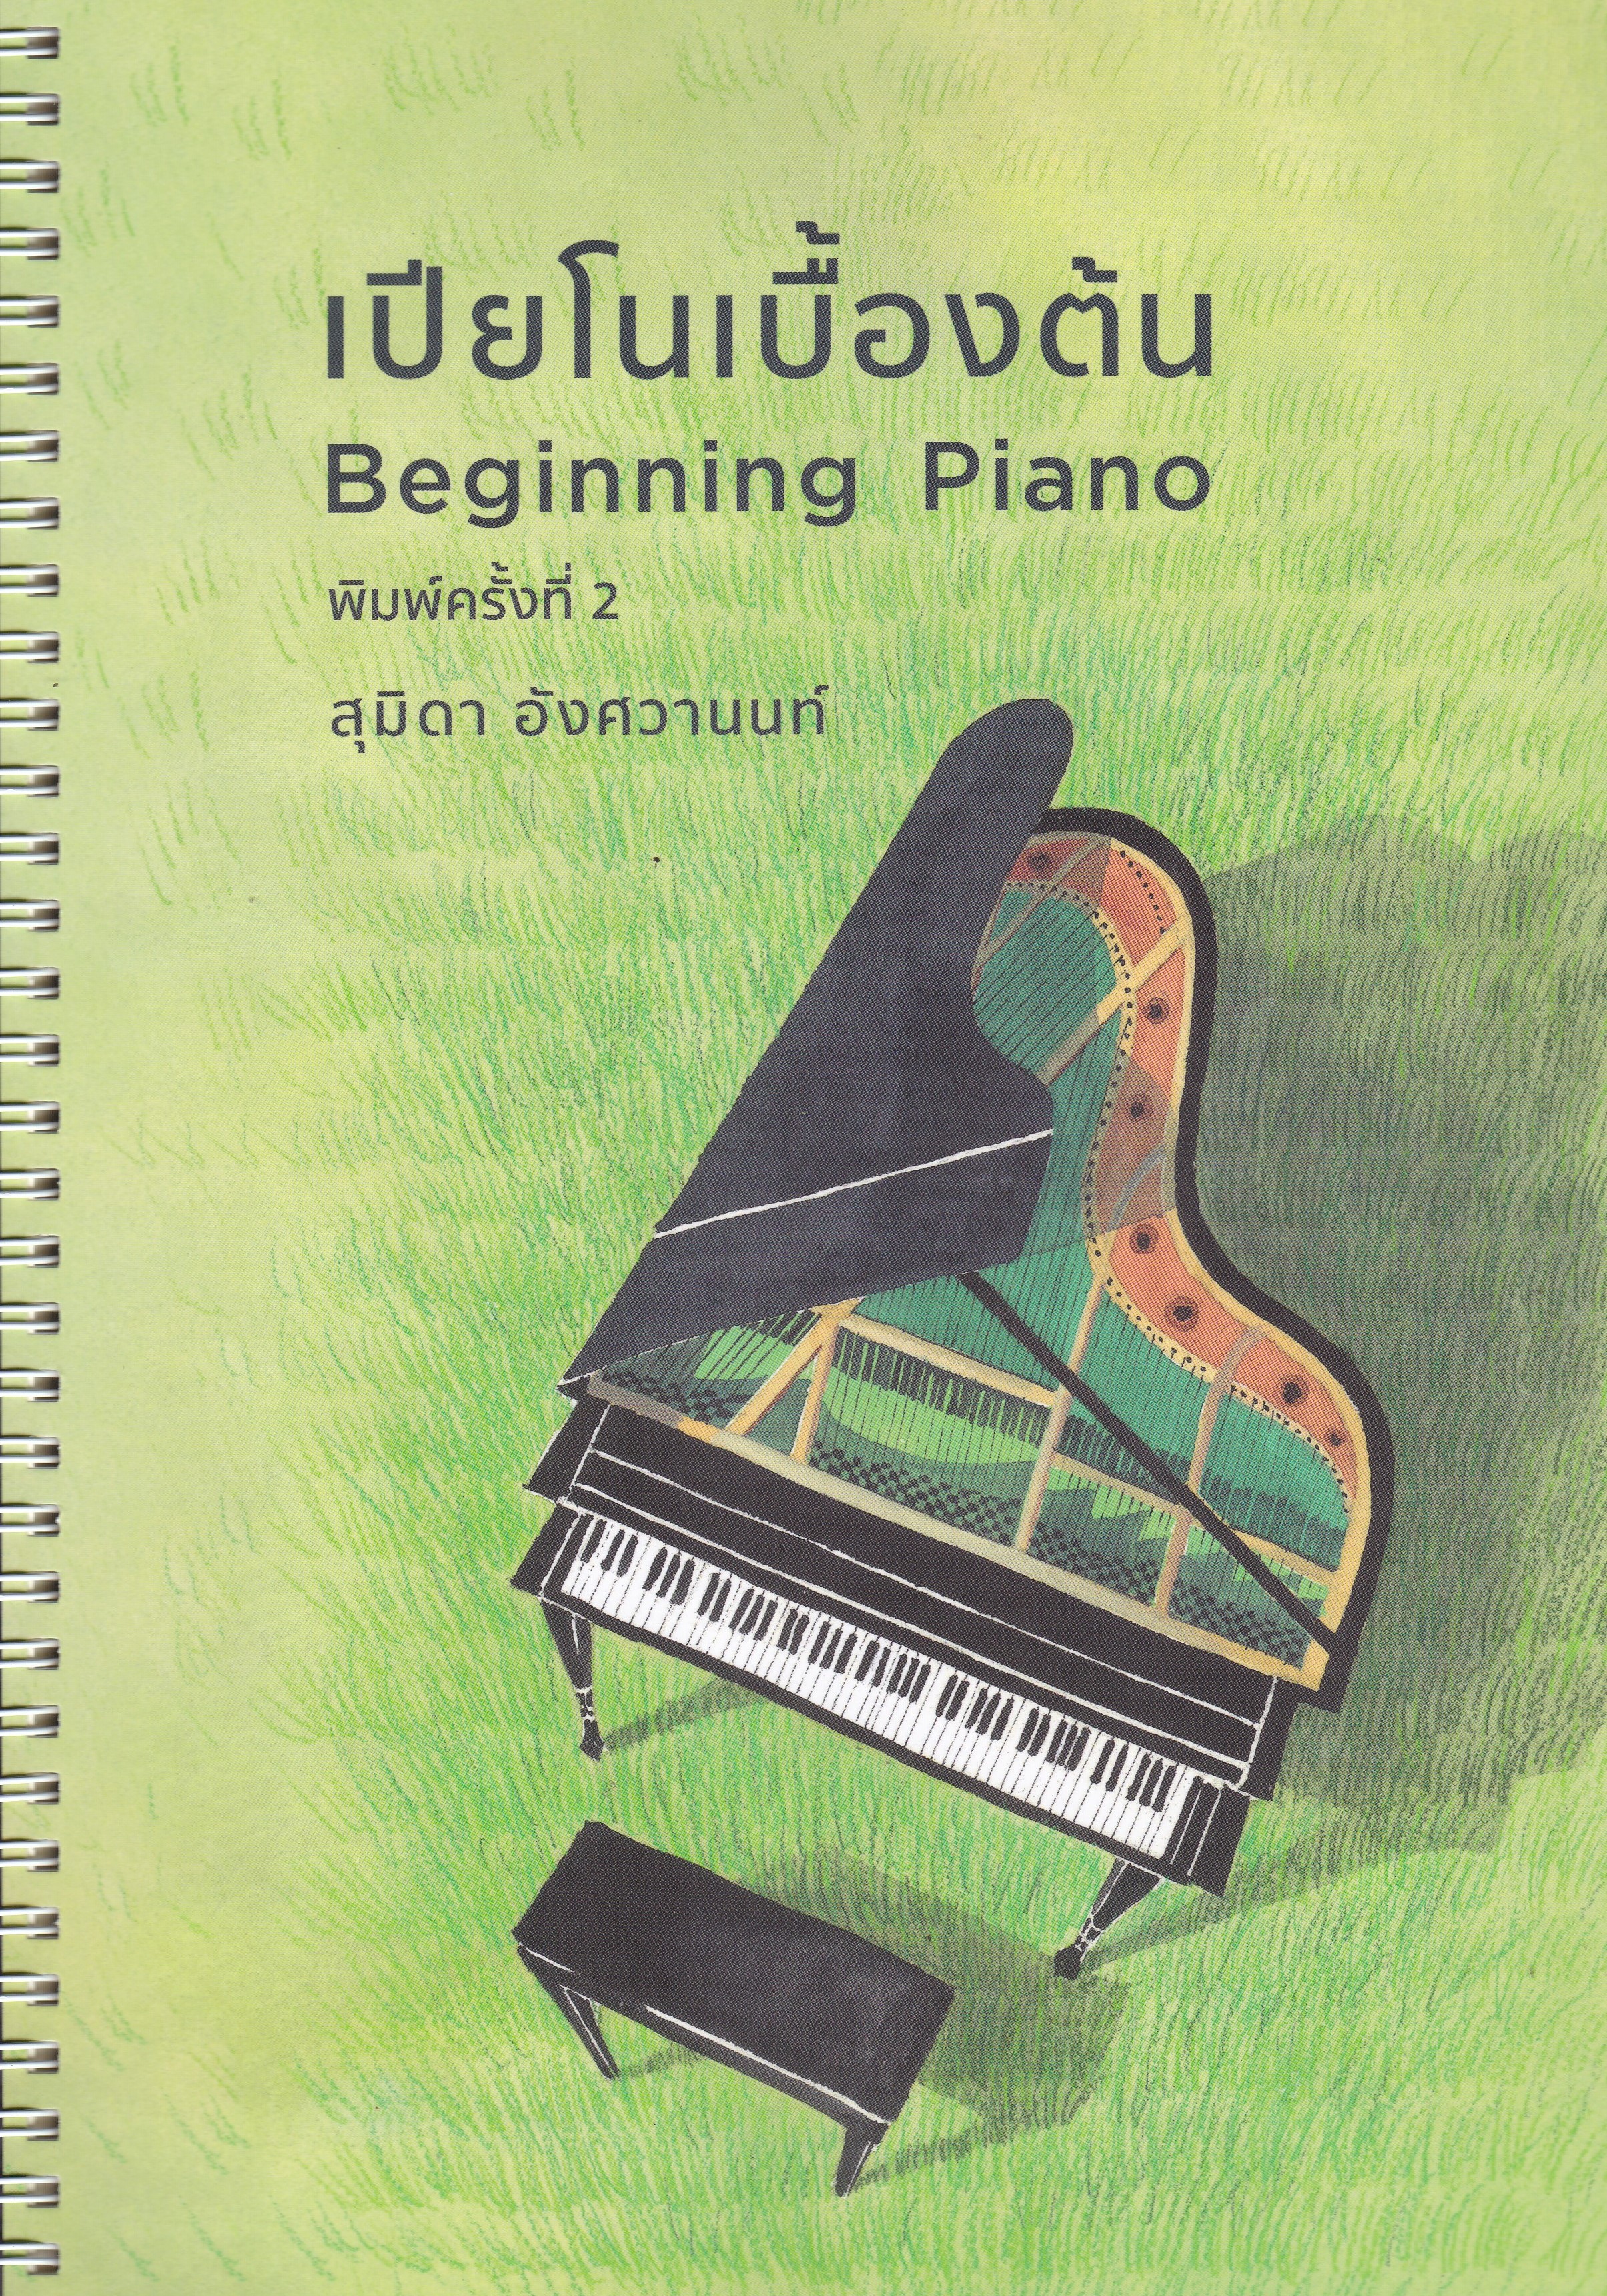 เปียโนเบื้องต้น (BEGINNING PIANO)